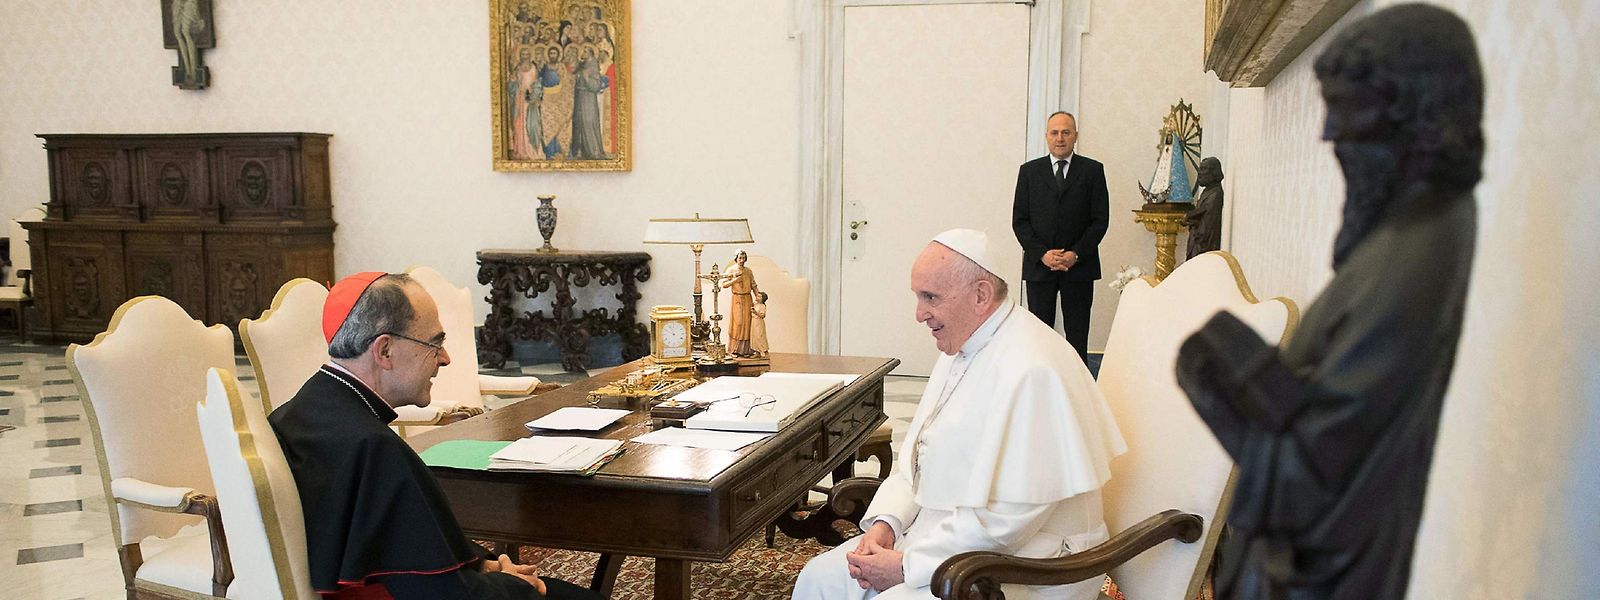 Papst Franziskus im Gespräch mit Philippe Barbarin. Foto vom 18. März 2019.